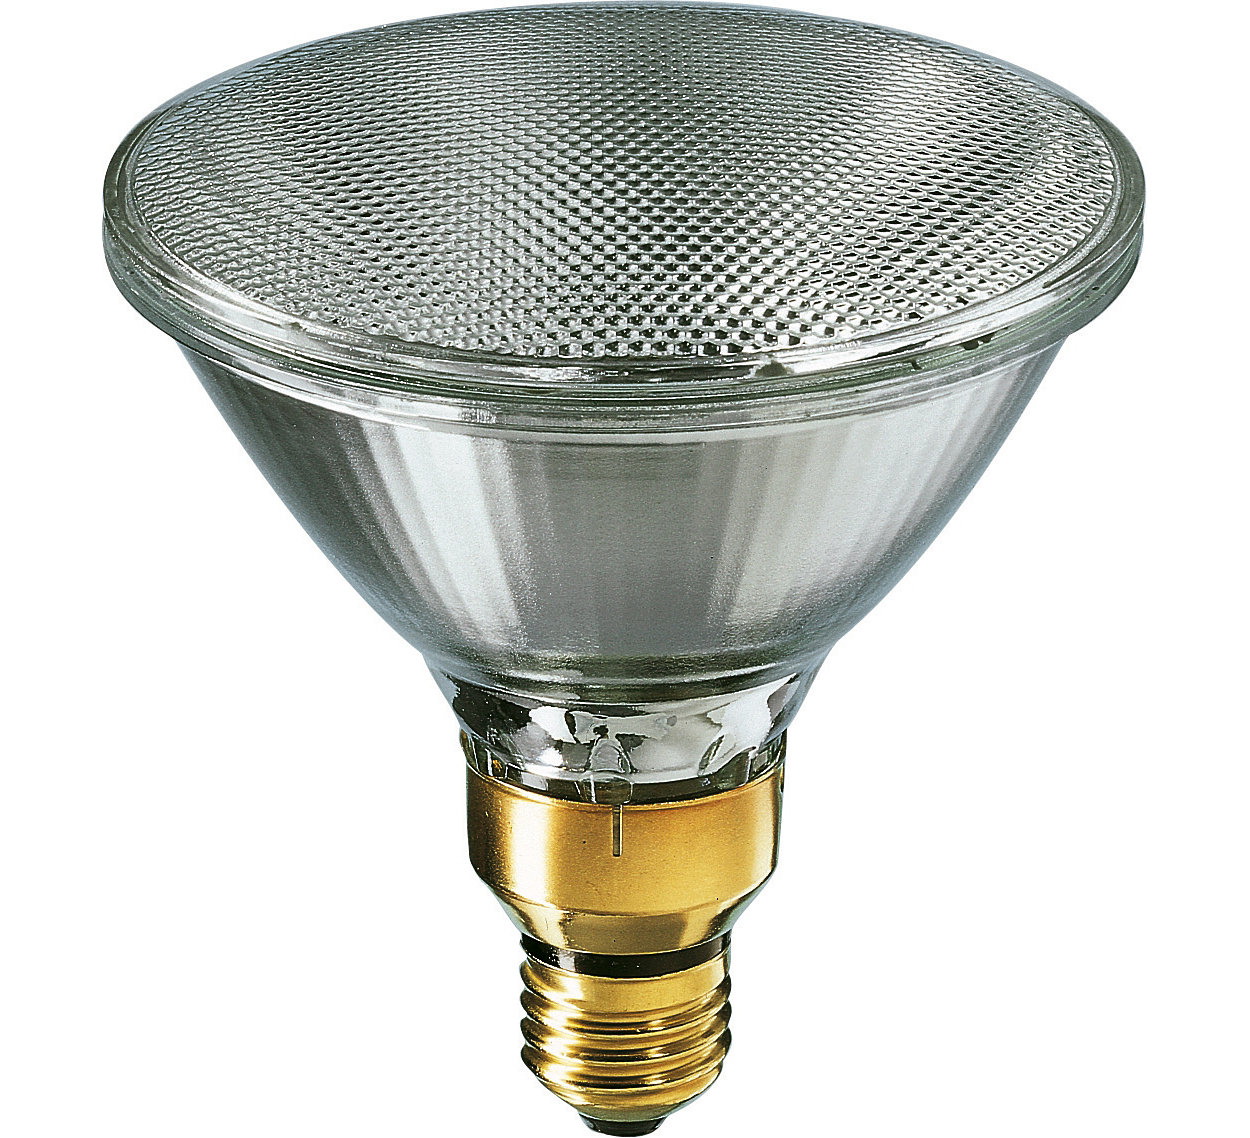 Spot de luz blanca nítida; alternativa moderna para las lámparas reflectoras convencionales